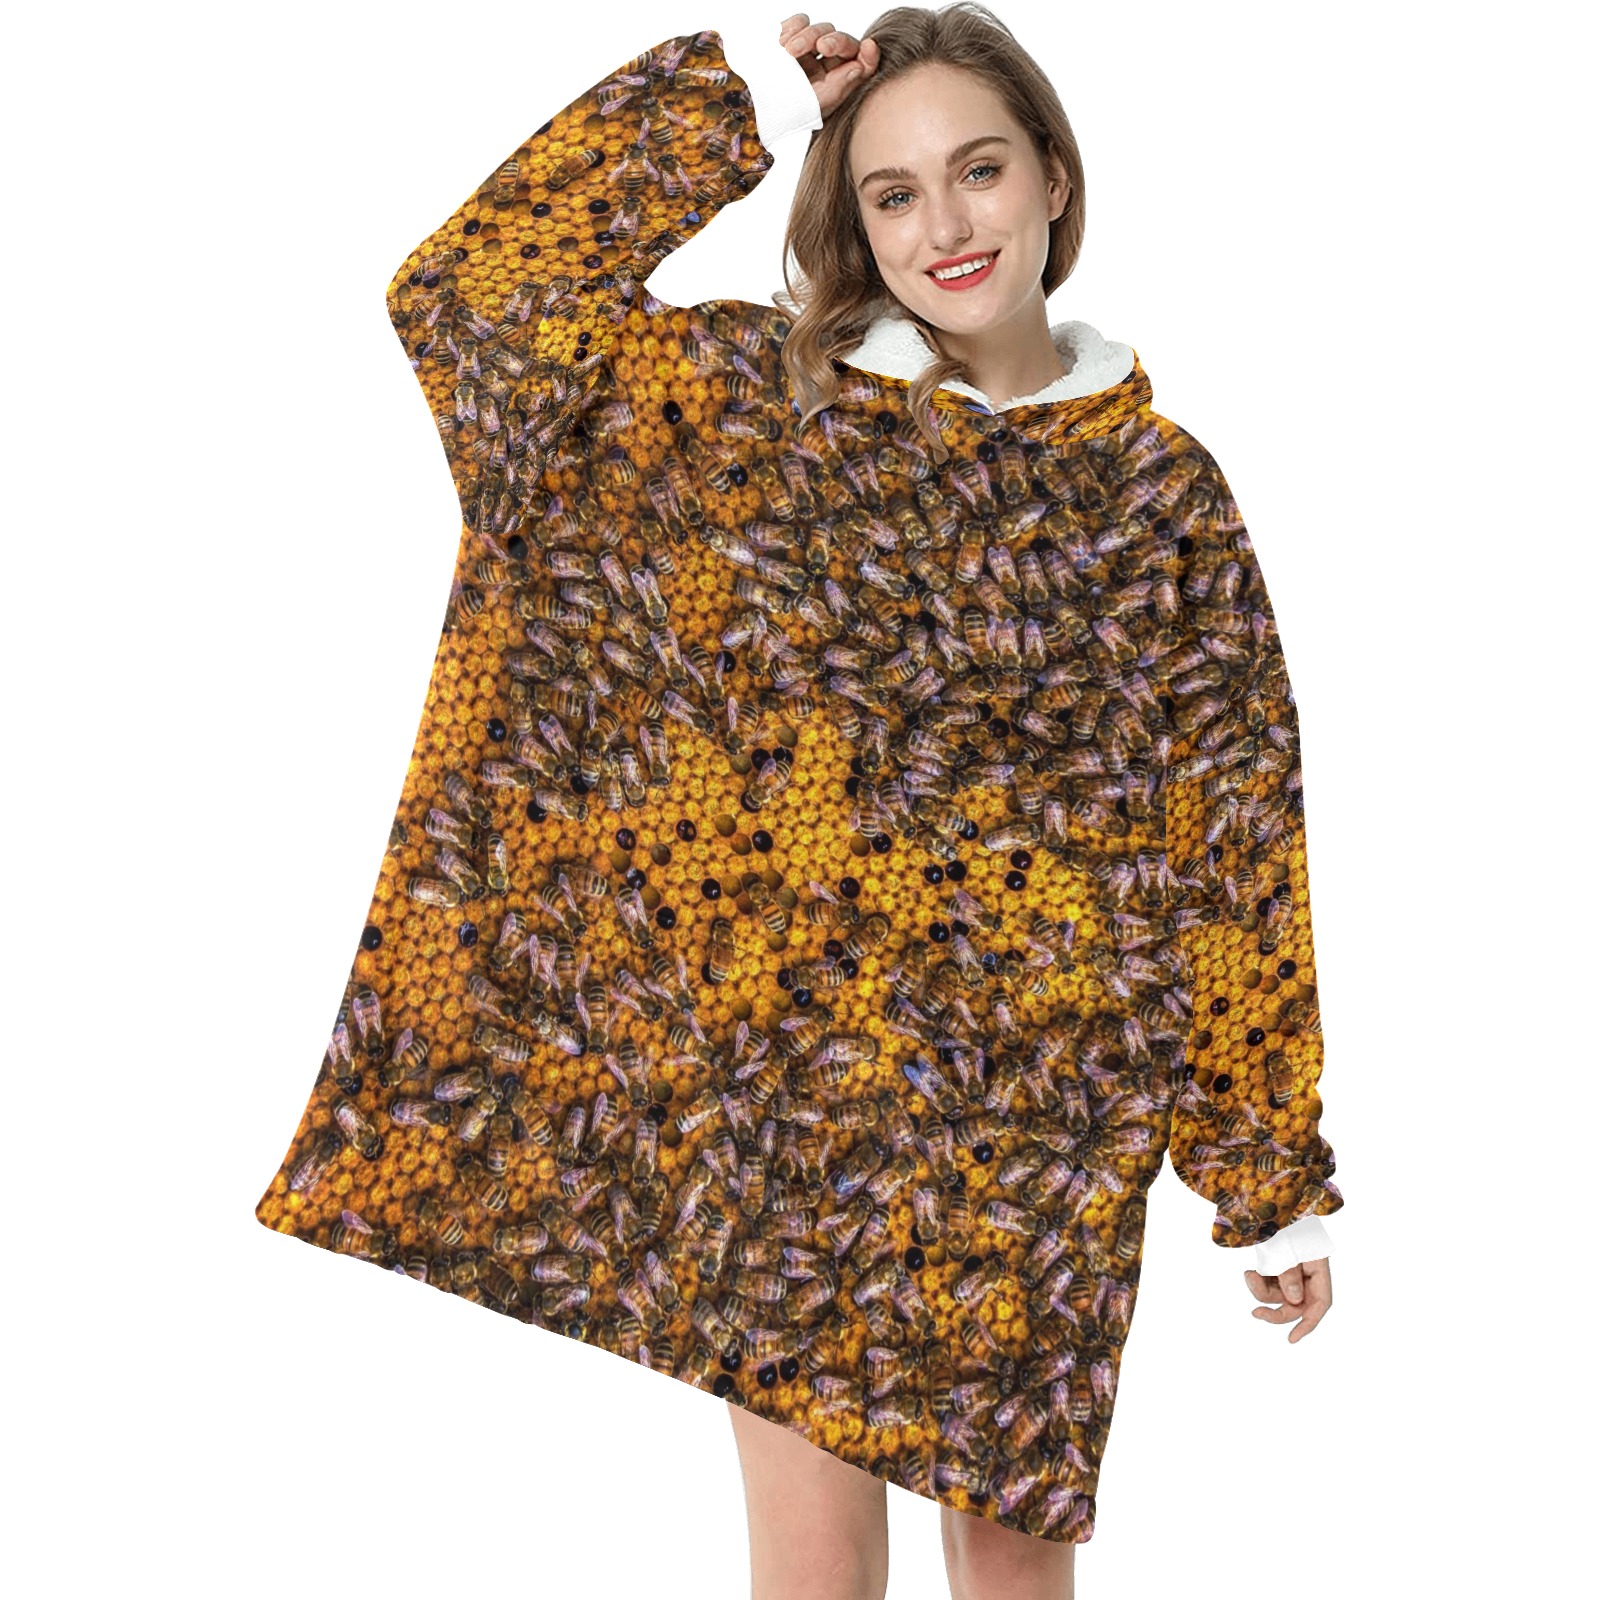 HONEY BEES 3 Blanket Hoodie for Women